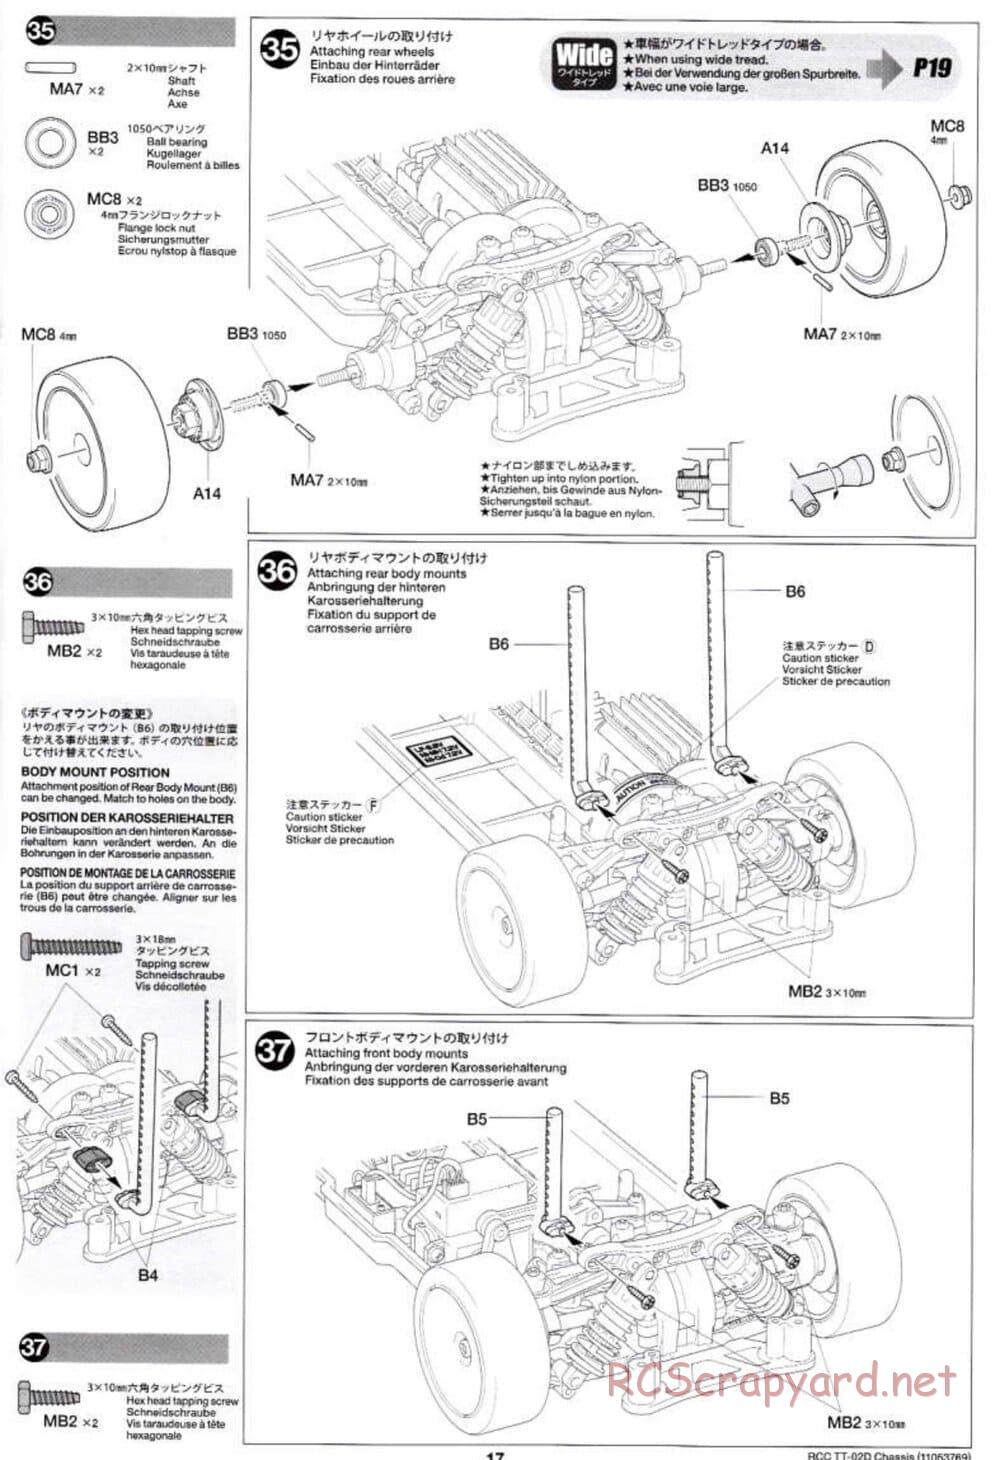 Tamiya - TT-02D Chassis - Manual - Page 17